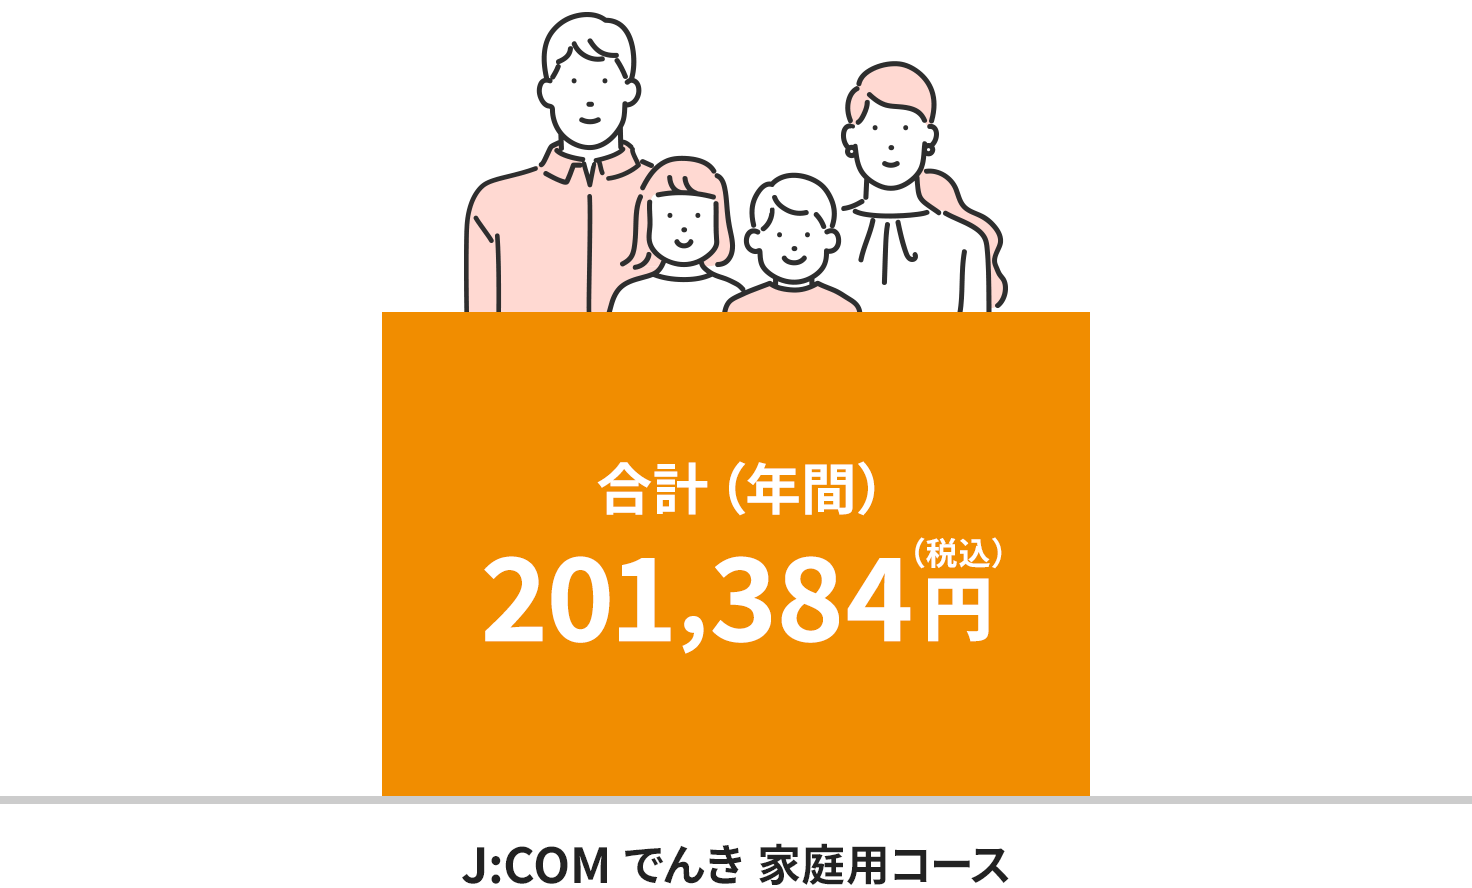 九州电力地区的收费图像 (4人家庭的情况)